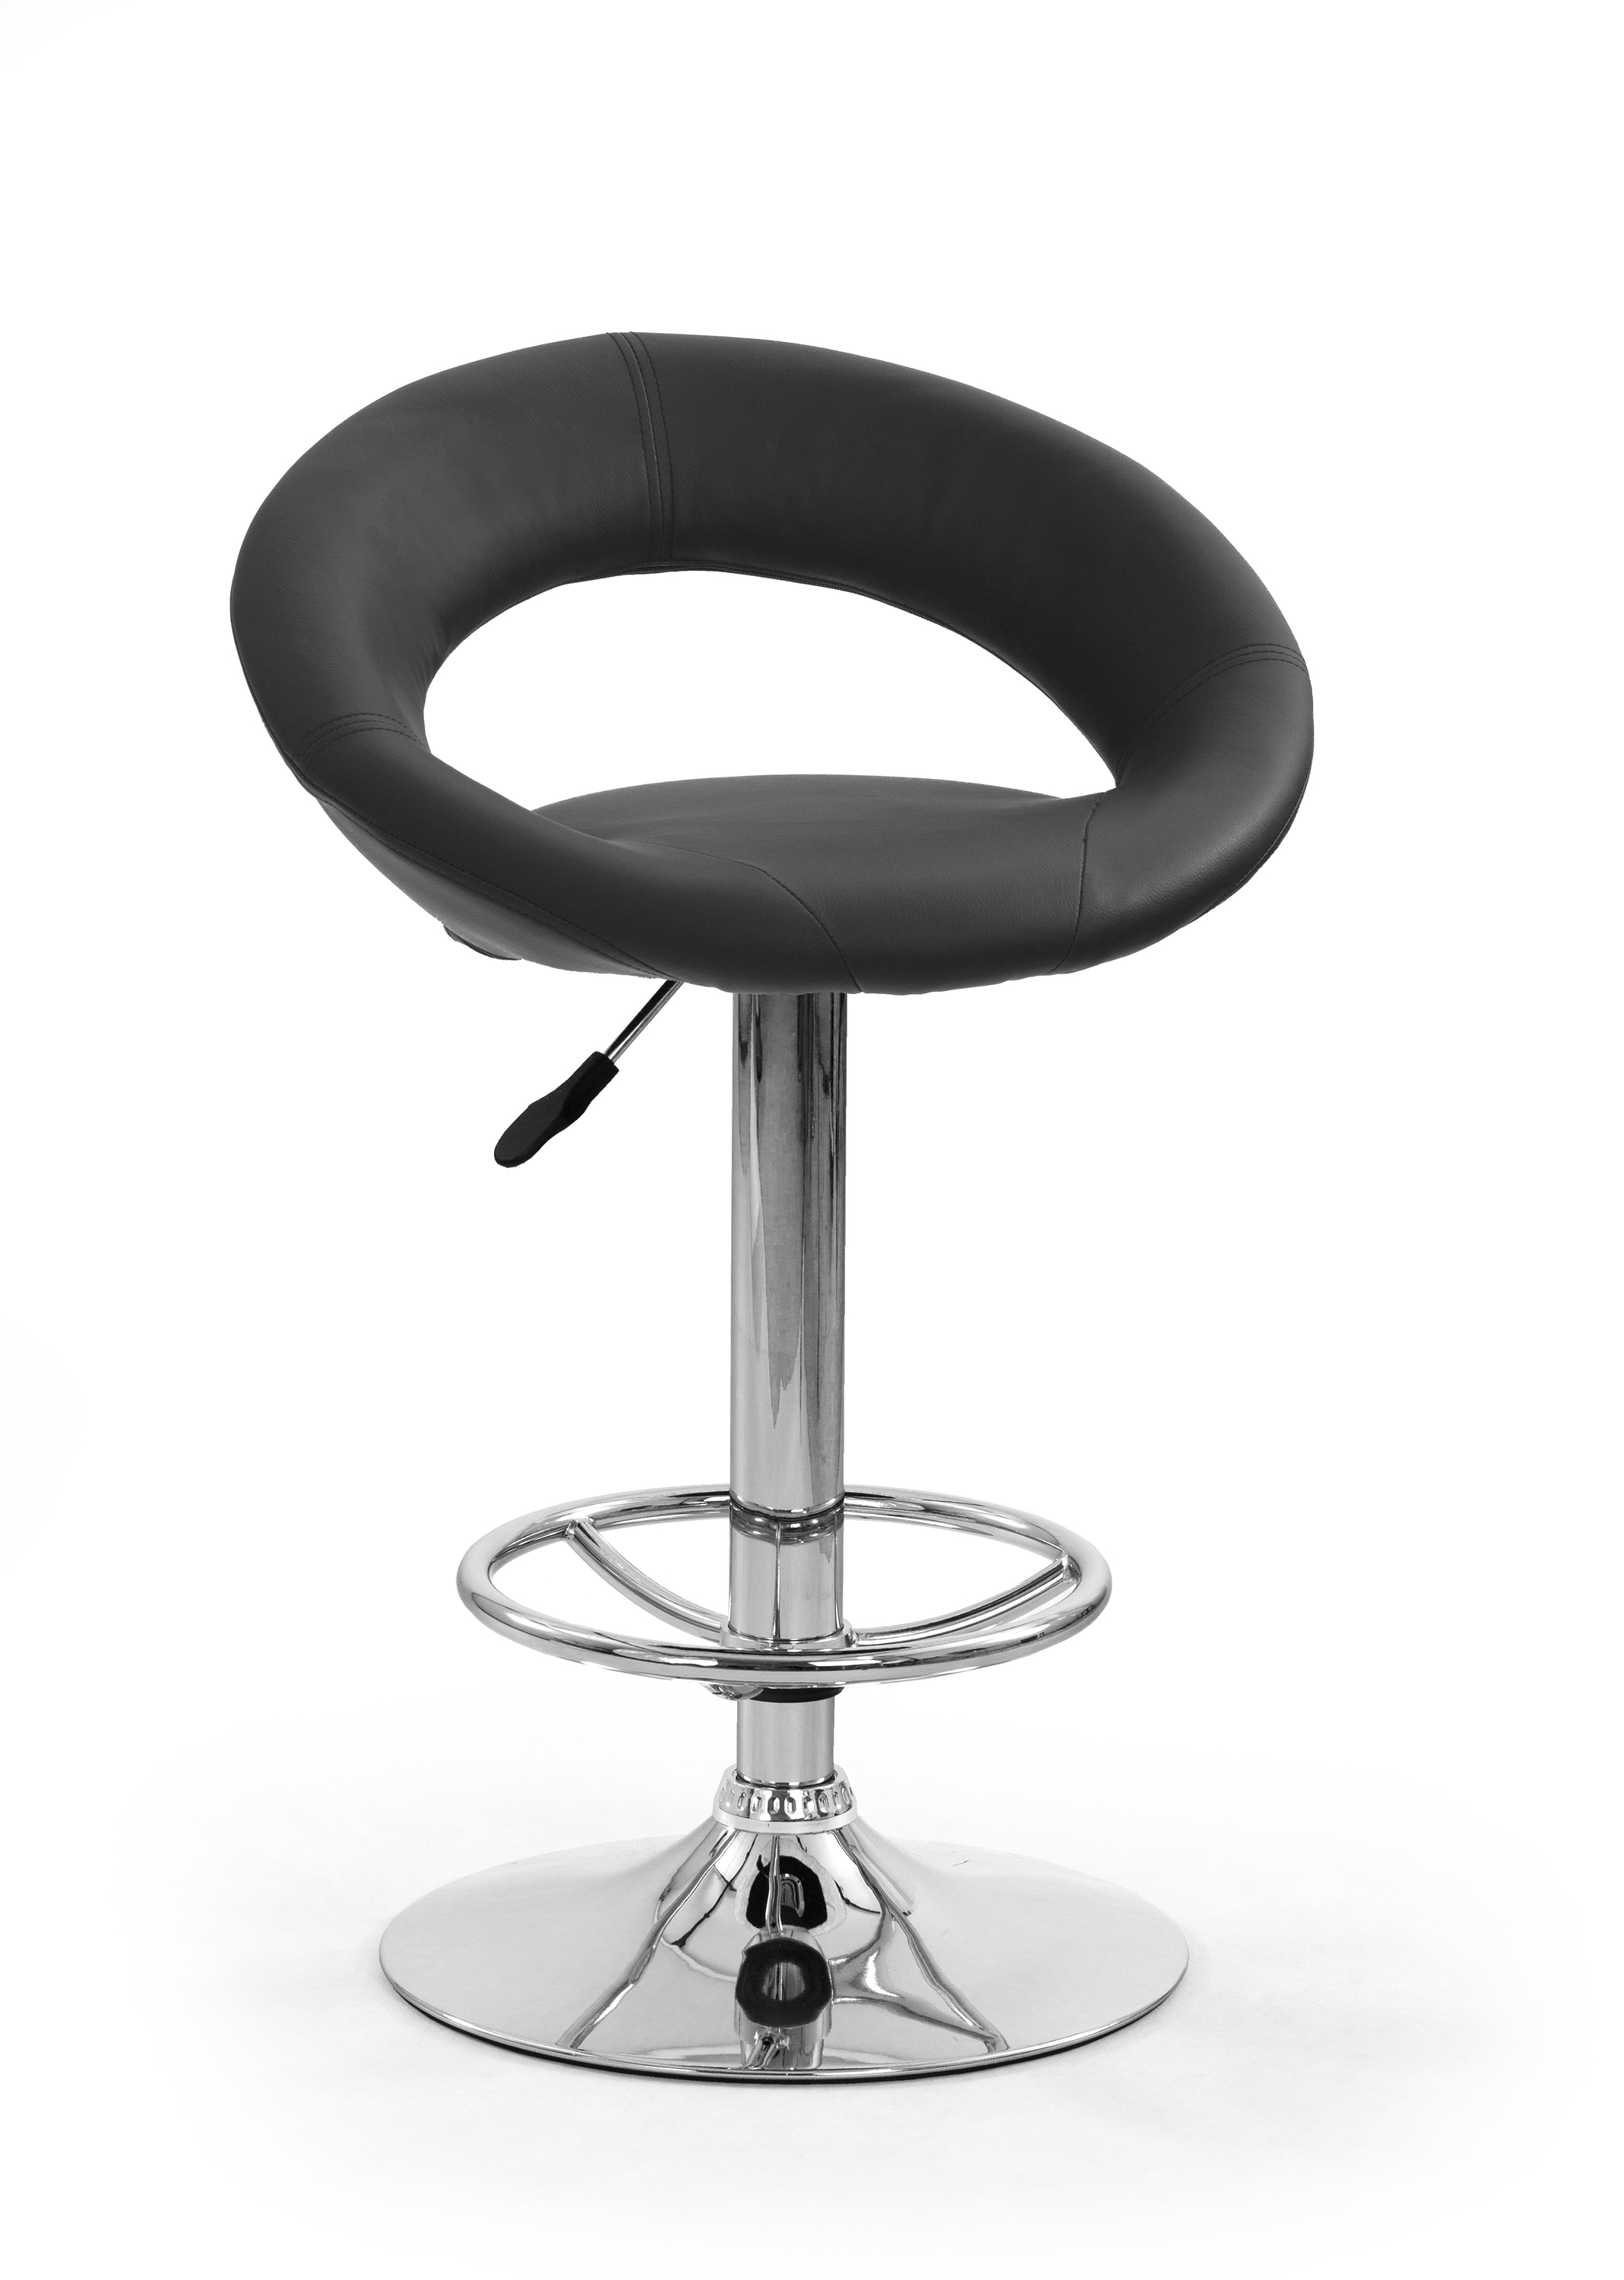 Barová židle MARINA - černá